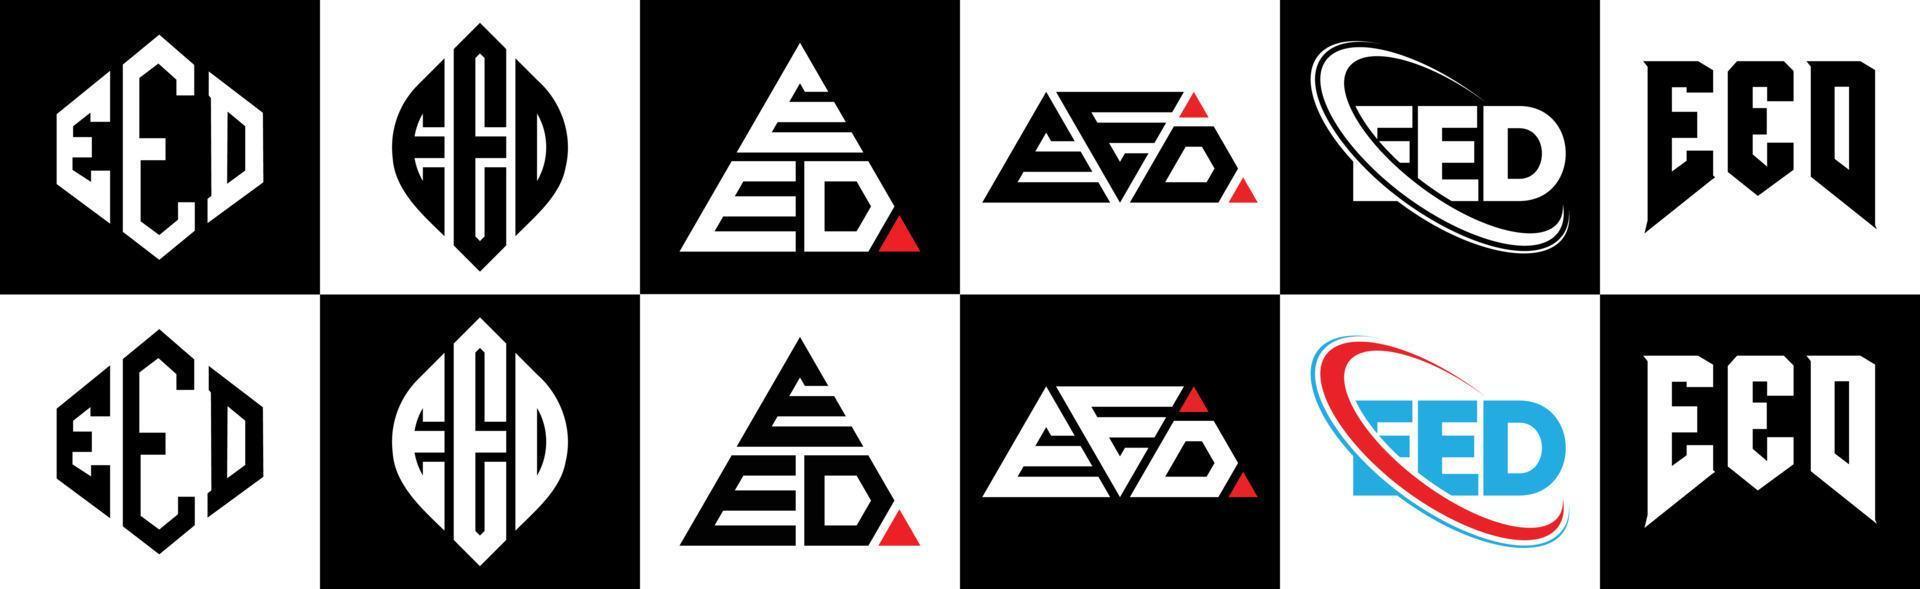 Eed-Buchstaben-Logo-Design in sechs Stilen. Eed-Polygon, Kreis, Dreieck, Sechseck, flacher und einfacher Stil mit schwarz-weißem Buchstabenlogo in einer Zeichenfläche. eed minimalistisches und klassisches Logo vektor